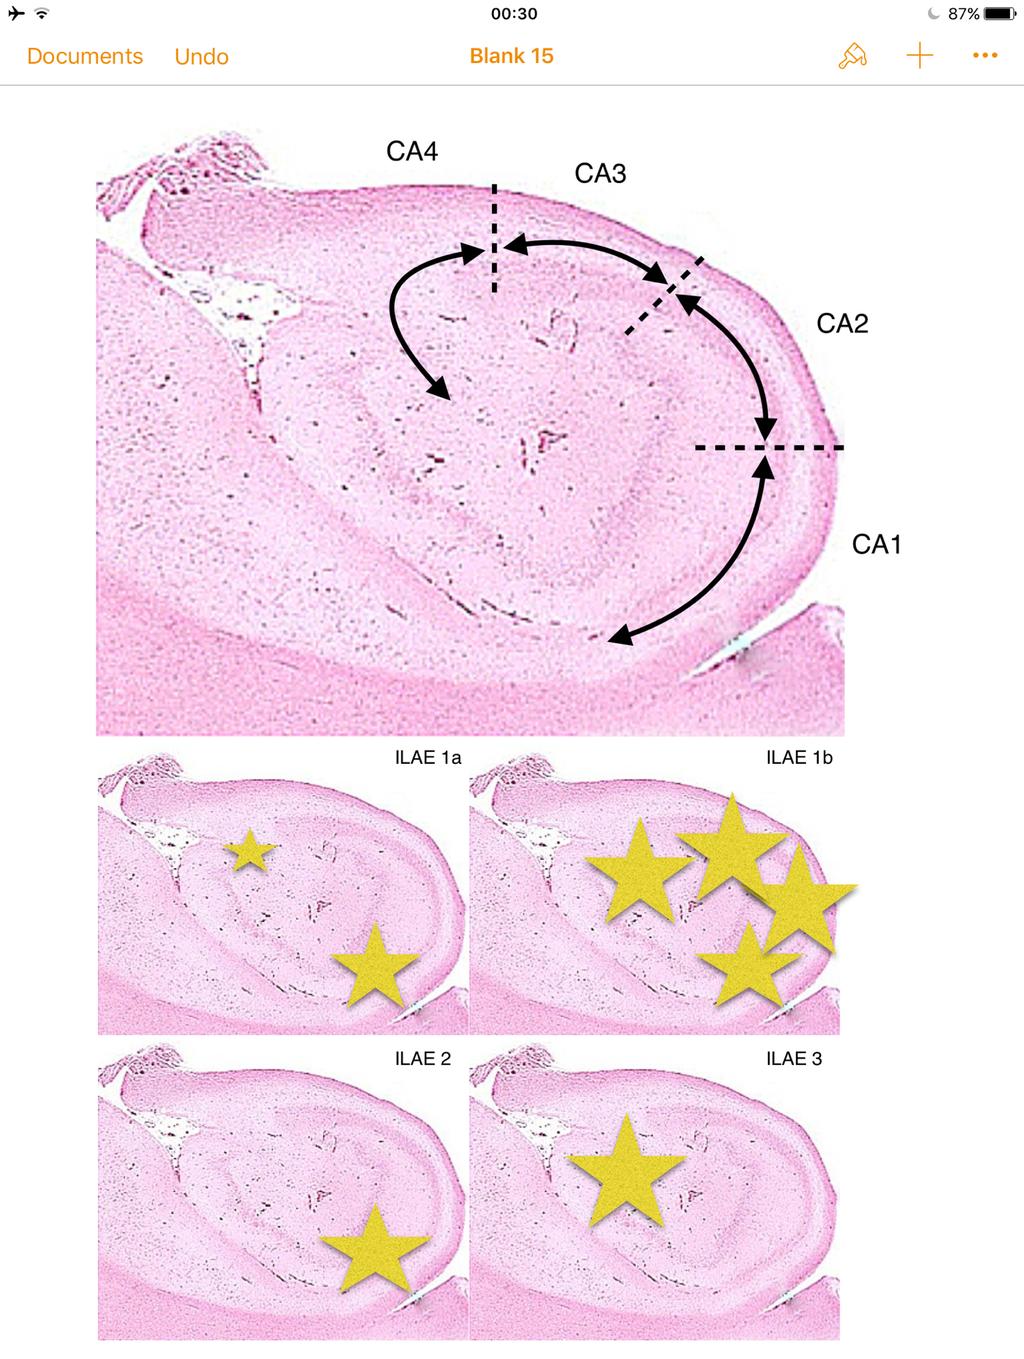 Slika 2: Shematski prikazani sektori Ammonovog roga na histološkoj slici hipokampusa, uz shematski prikaz tipičnih mjesta sklerotičnih lezija